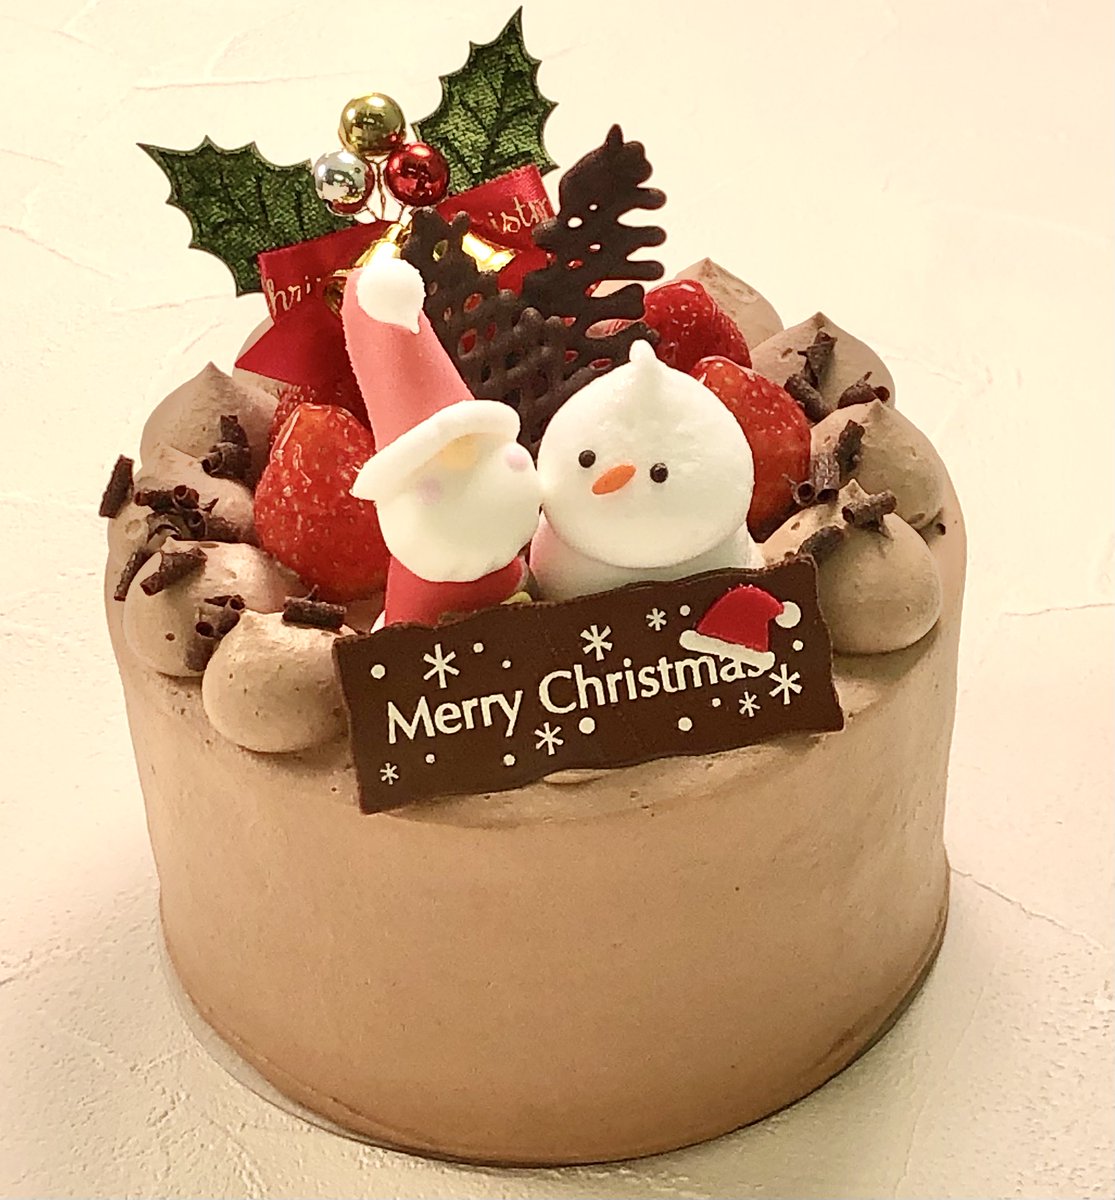 恵那川上屋 公式 お菓子で元気に ｸｰﾘｽﾏｽｶﾞｺﾄｼﾓﾔｯﾃｸﾙｰ 恵那川上屋のクリスマスケーキ ご予約は6日まで クリスマスのデコレーションケーキは 生クリーム チョコレート 栗クリームの3種類 5号サイズ以上のケーキにのっているクリスマス